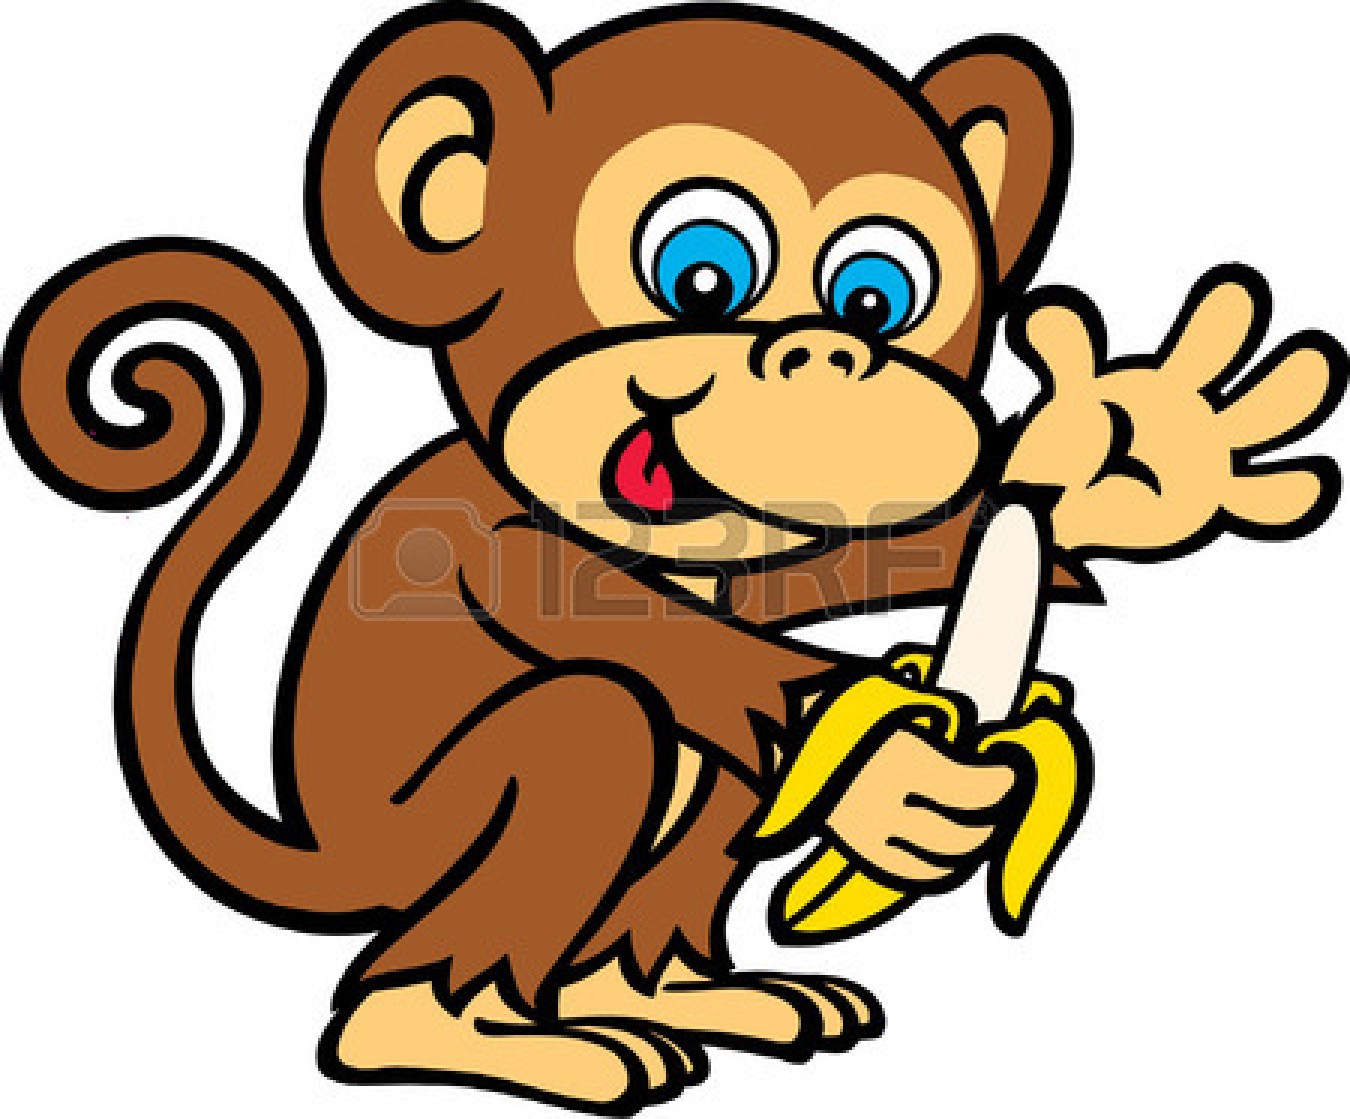 Monkey banana cartoon clipart - Clipartix